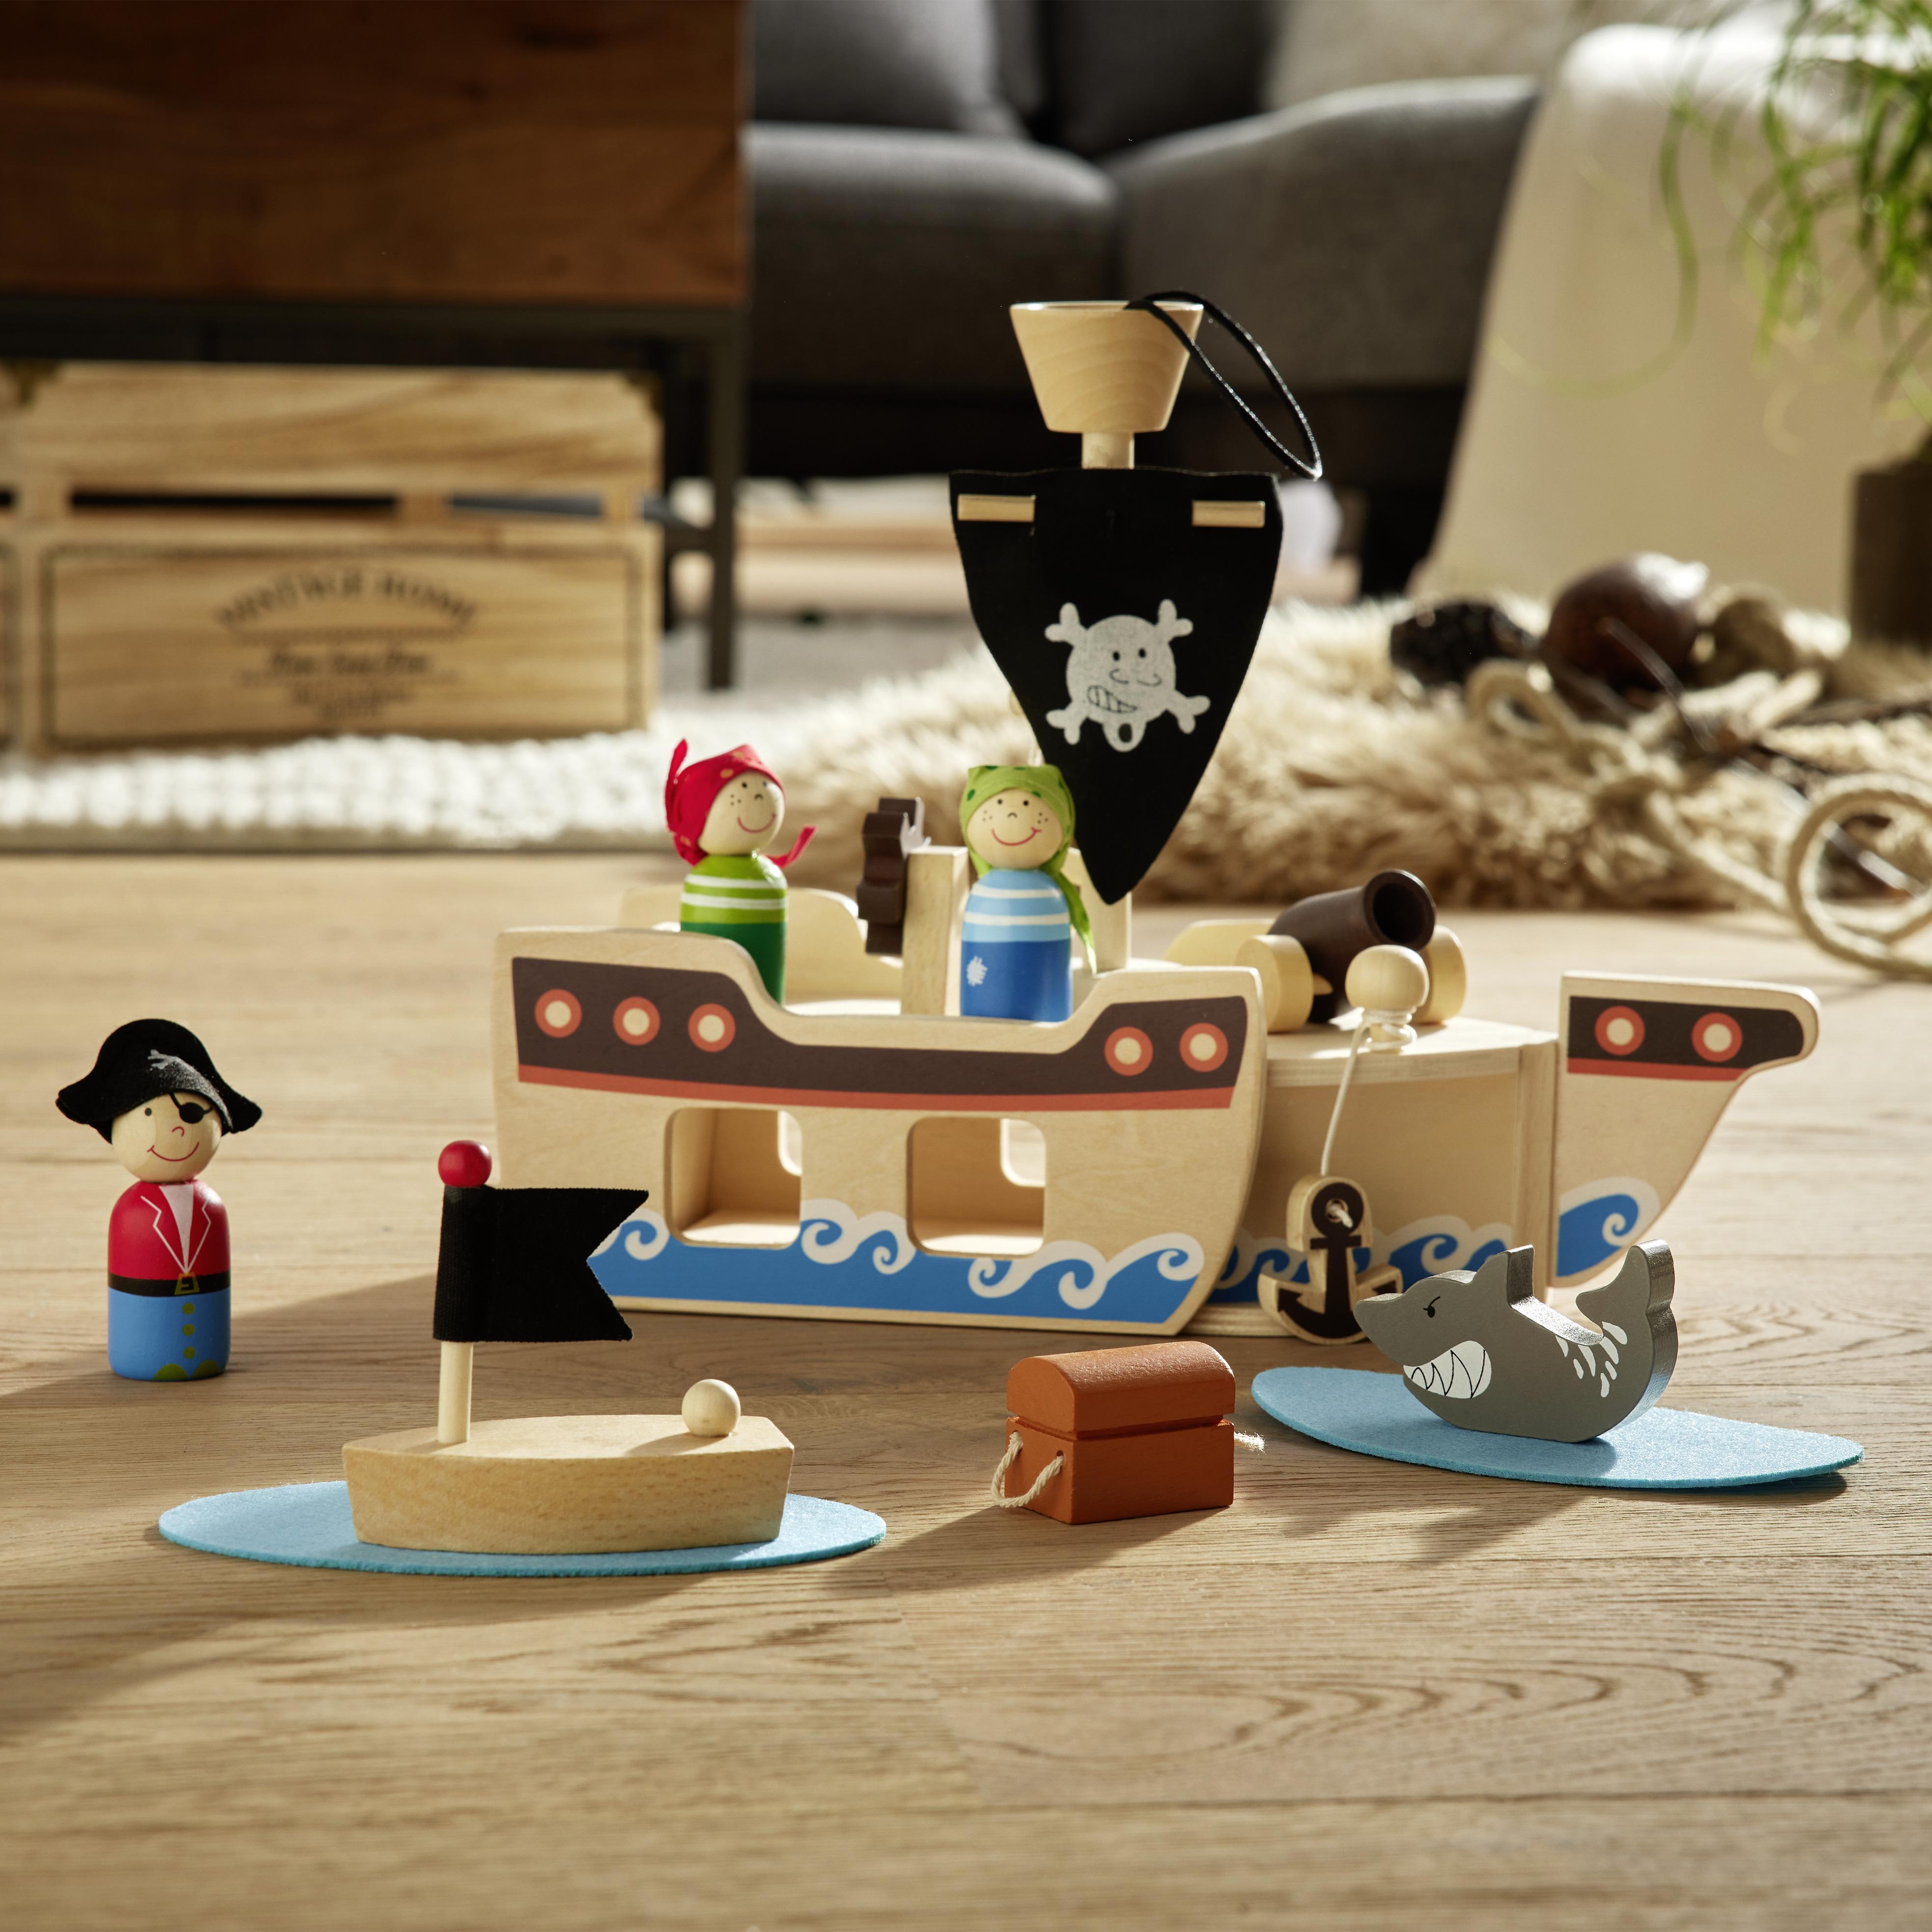 Kinderspielset Piratenschiff aus Holz, 10-teilig - Multicolor, Basics, Holz/Textil (31,5/12,7/25cm) - Based